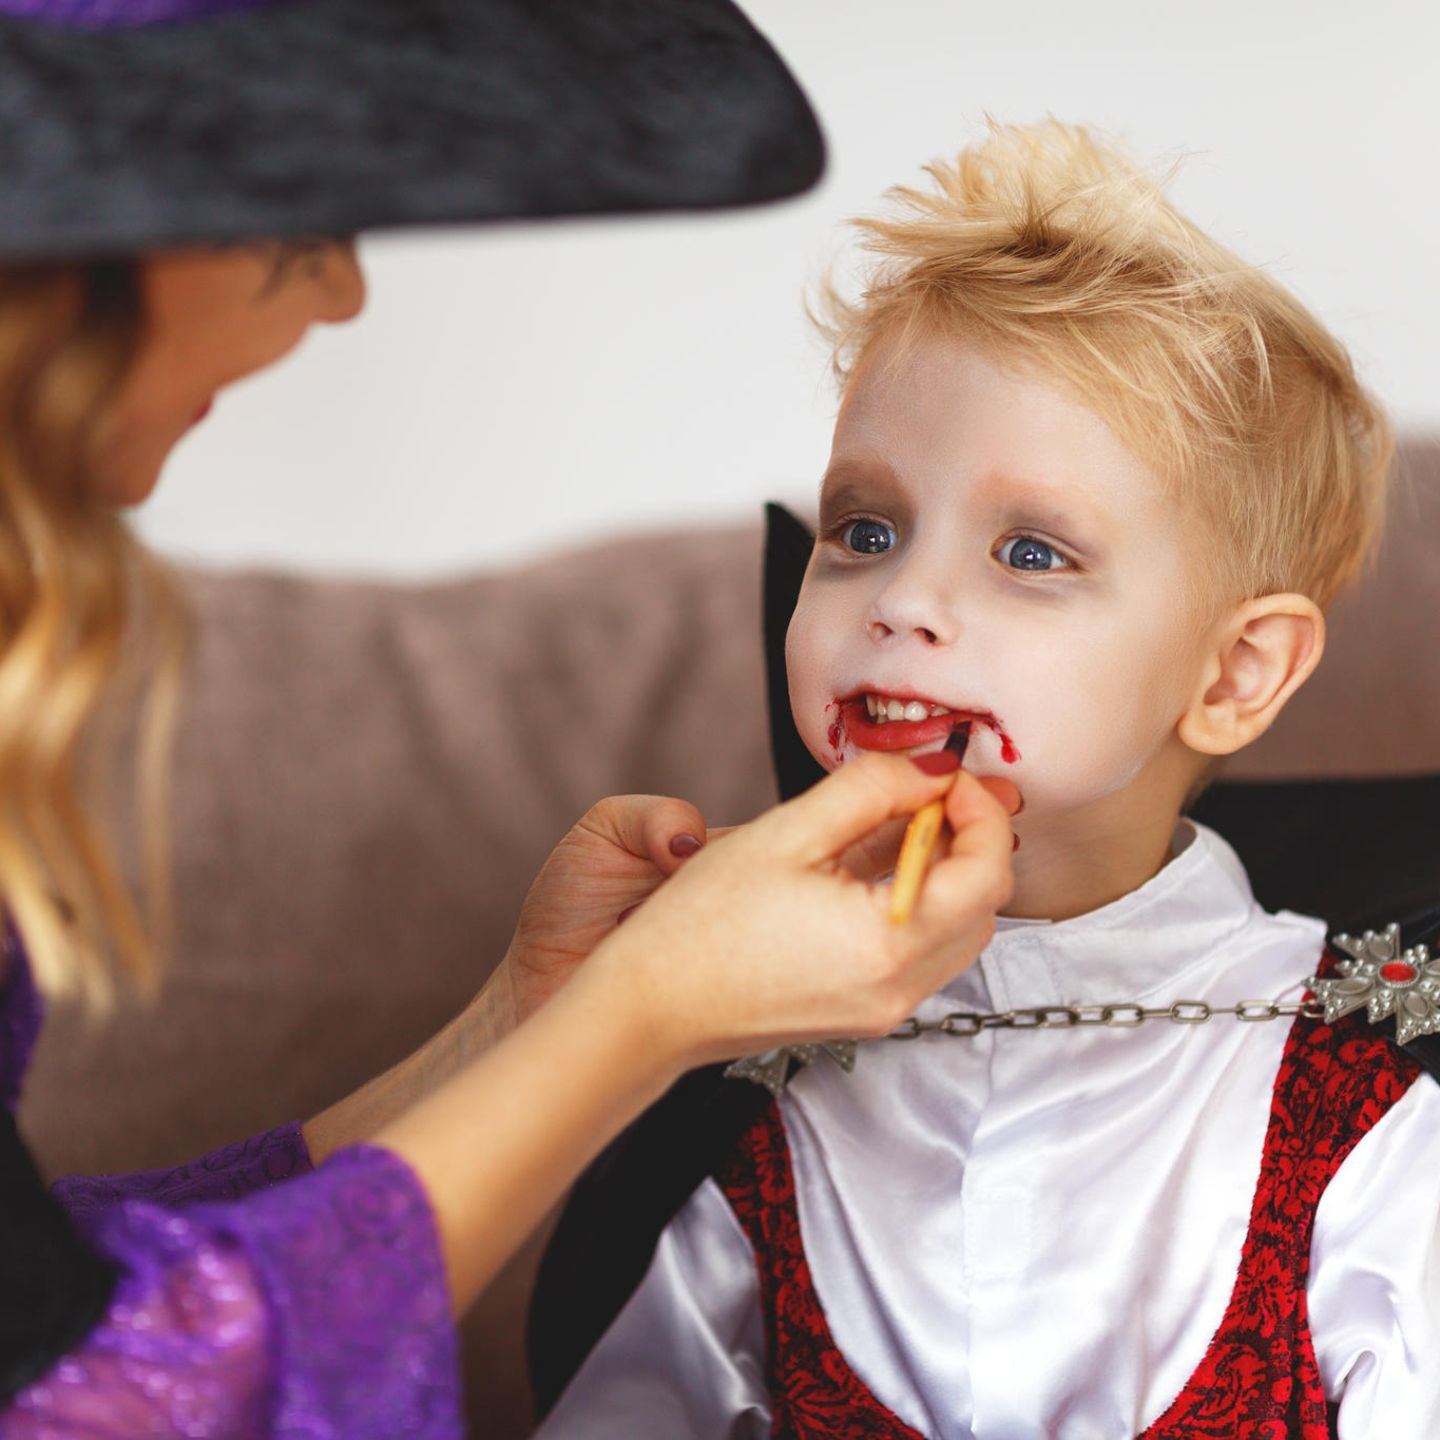 Vampir schminken: So wird das Kind zum Blutsauger